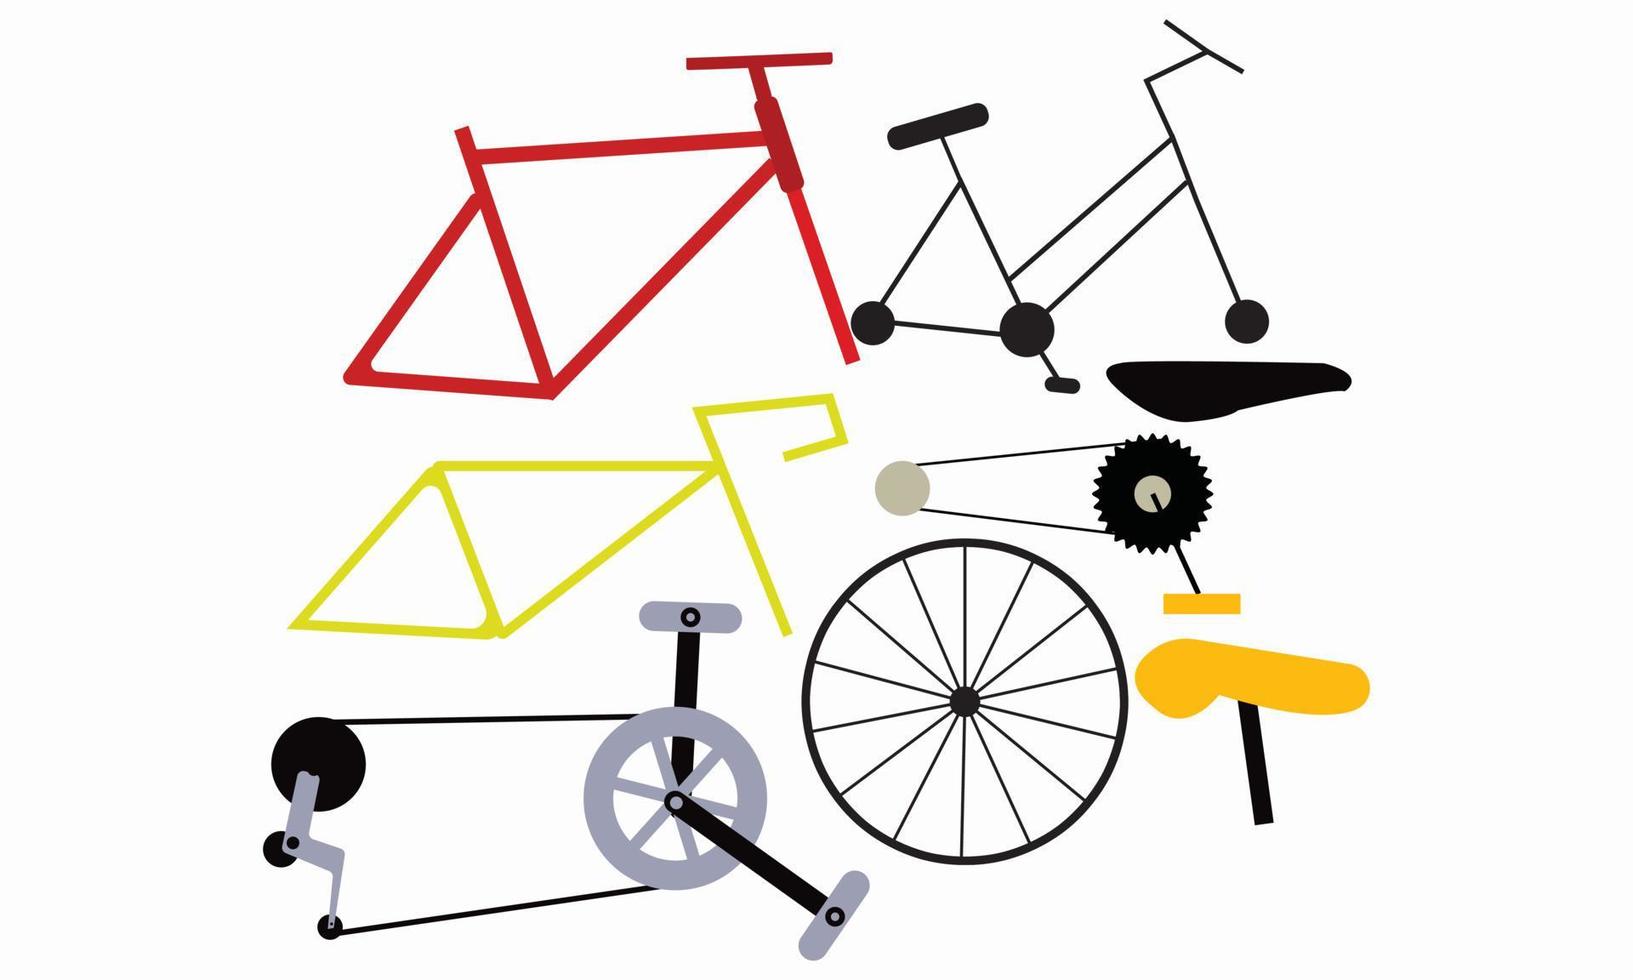 illustrazioni di vettori di parti di biciclette elementi di ciclismo del ciclista su strada